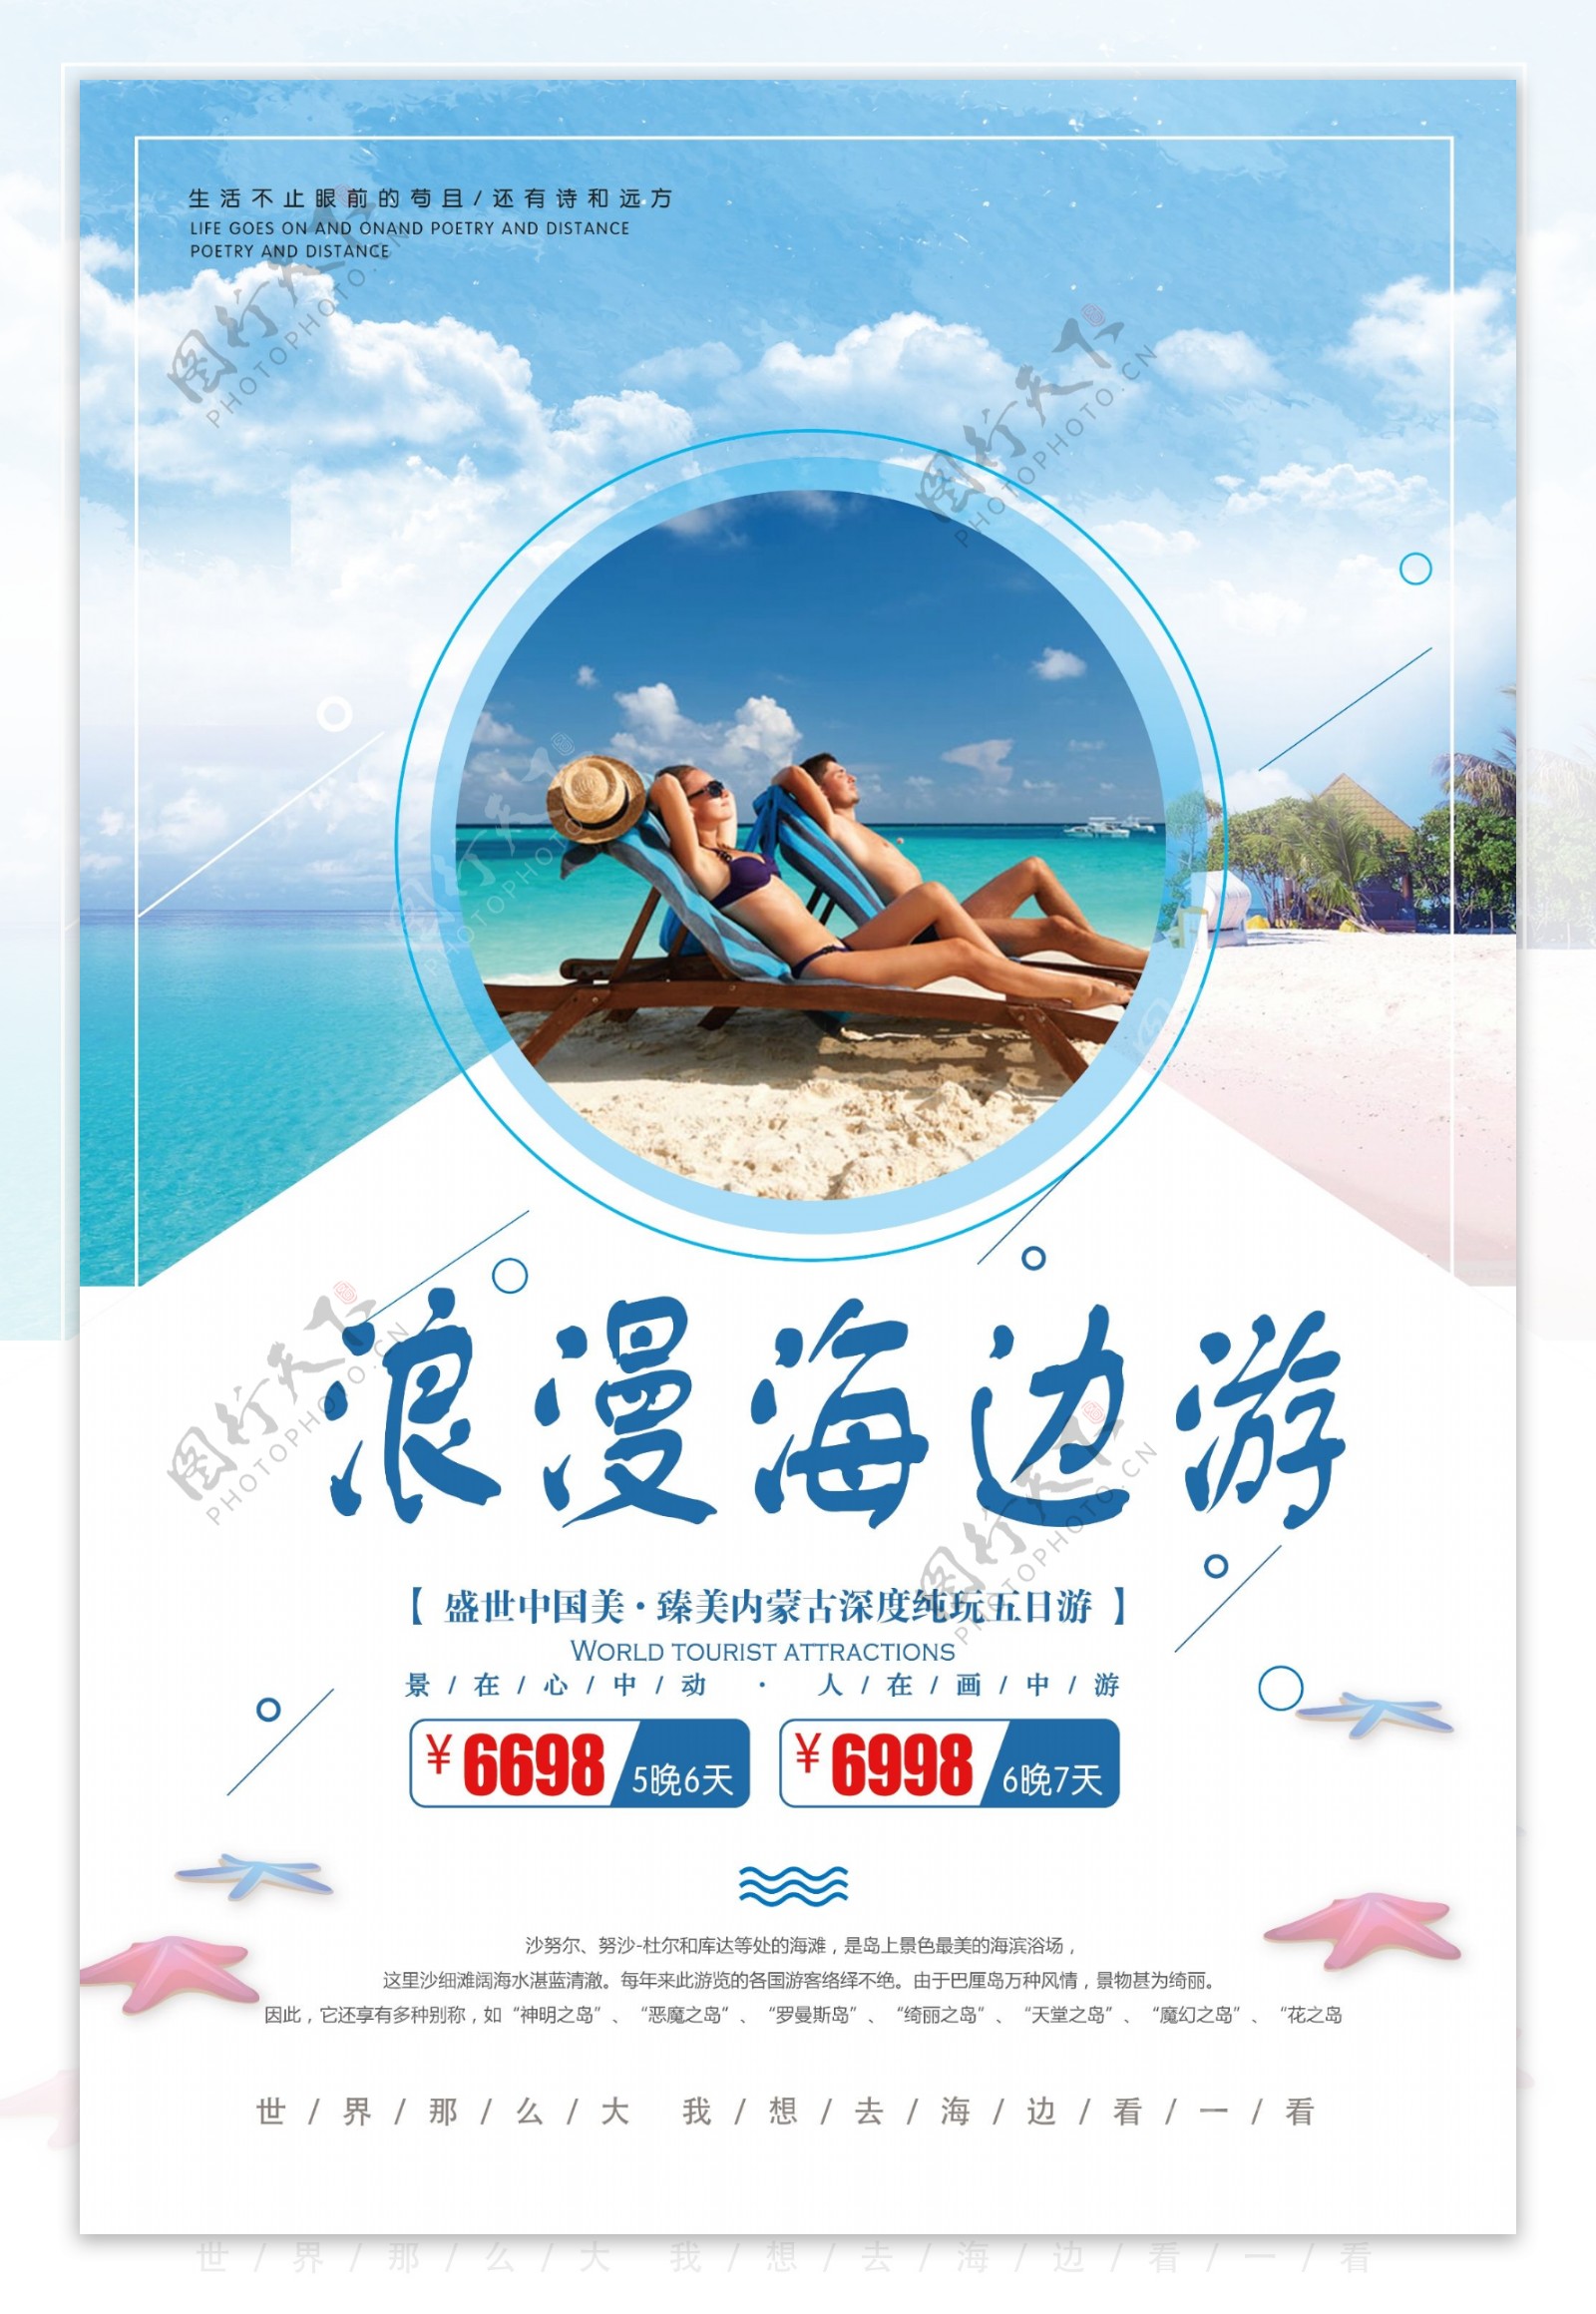 清新创意海边旅游宣传海报设计